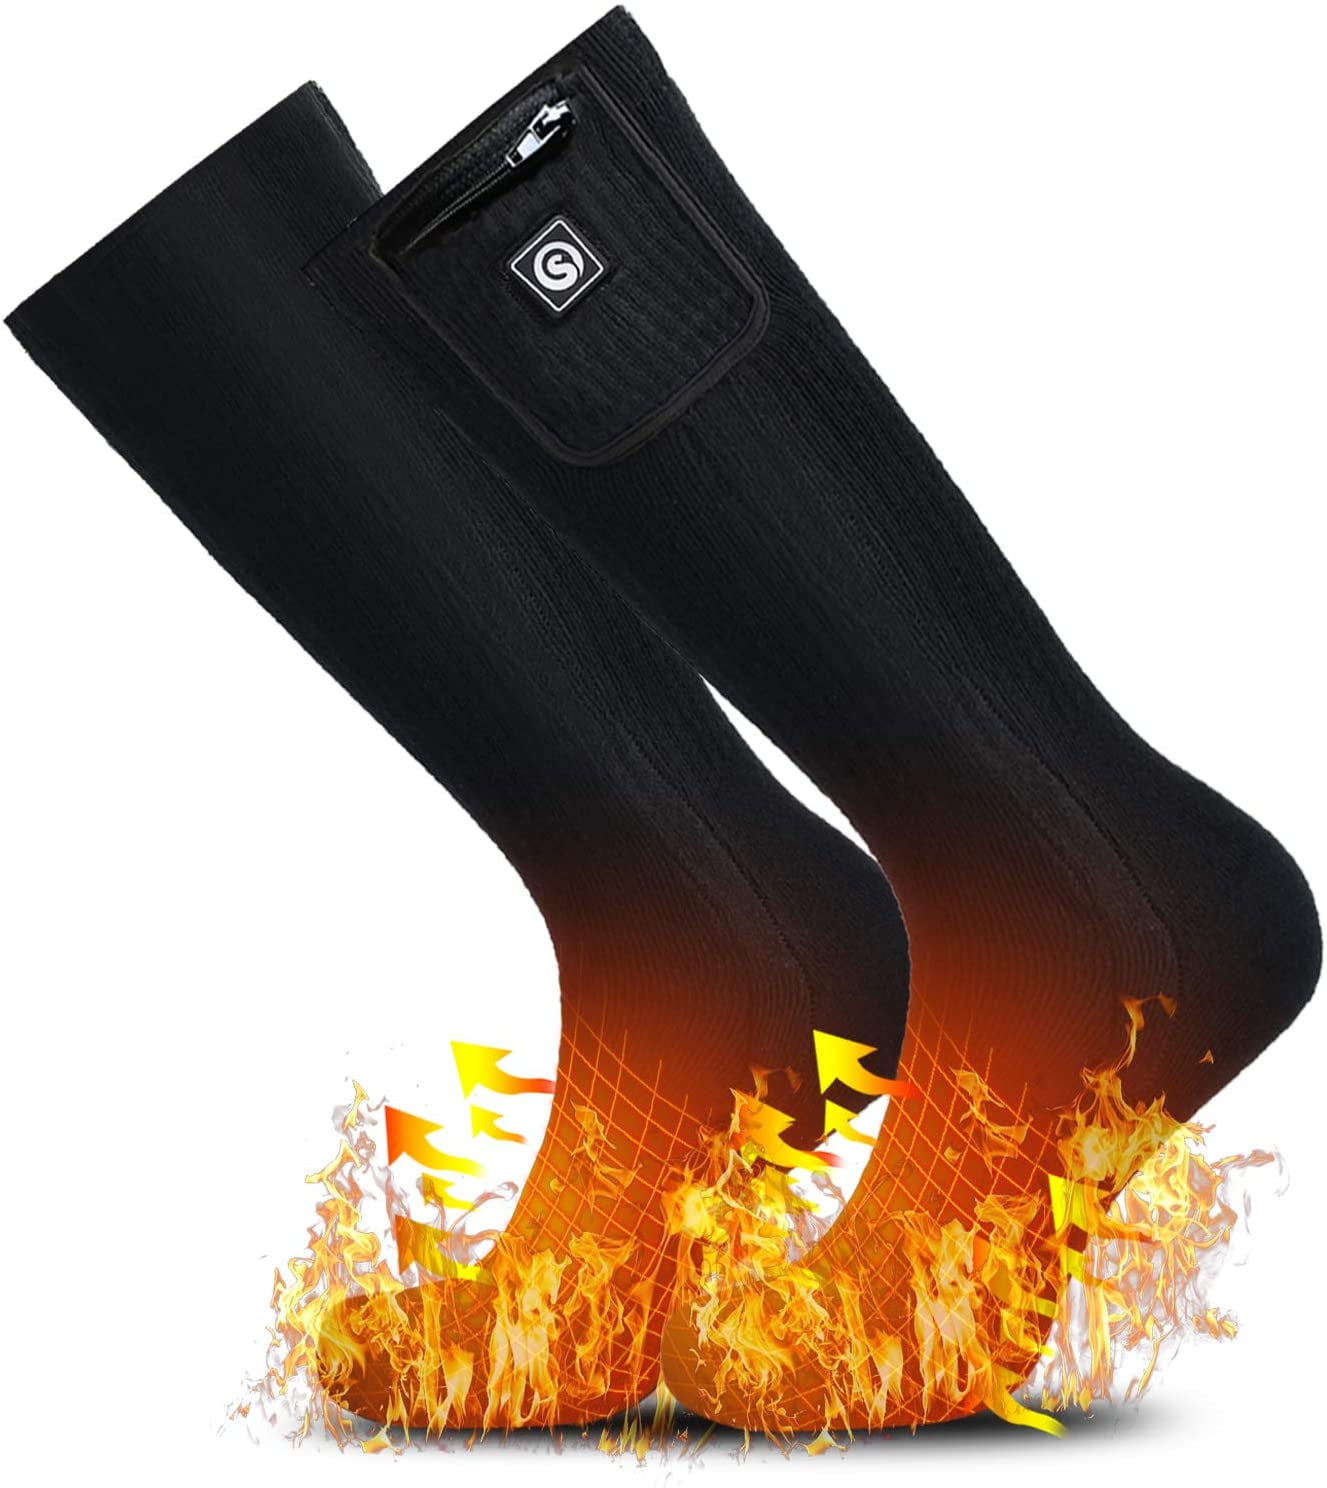 SNOW DEER Heated Socks for Men Women,2021 Upgraded 2200mAh Battery ...